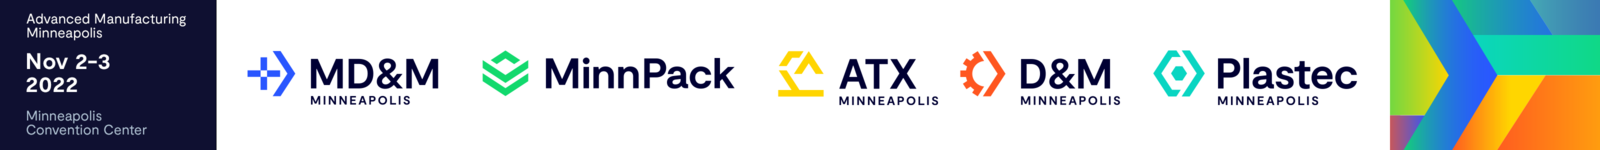 Minneapolis 2022 logo